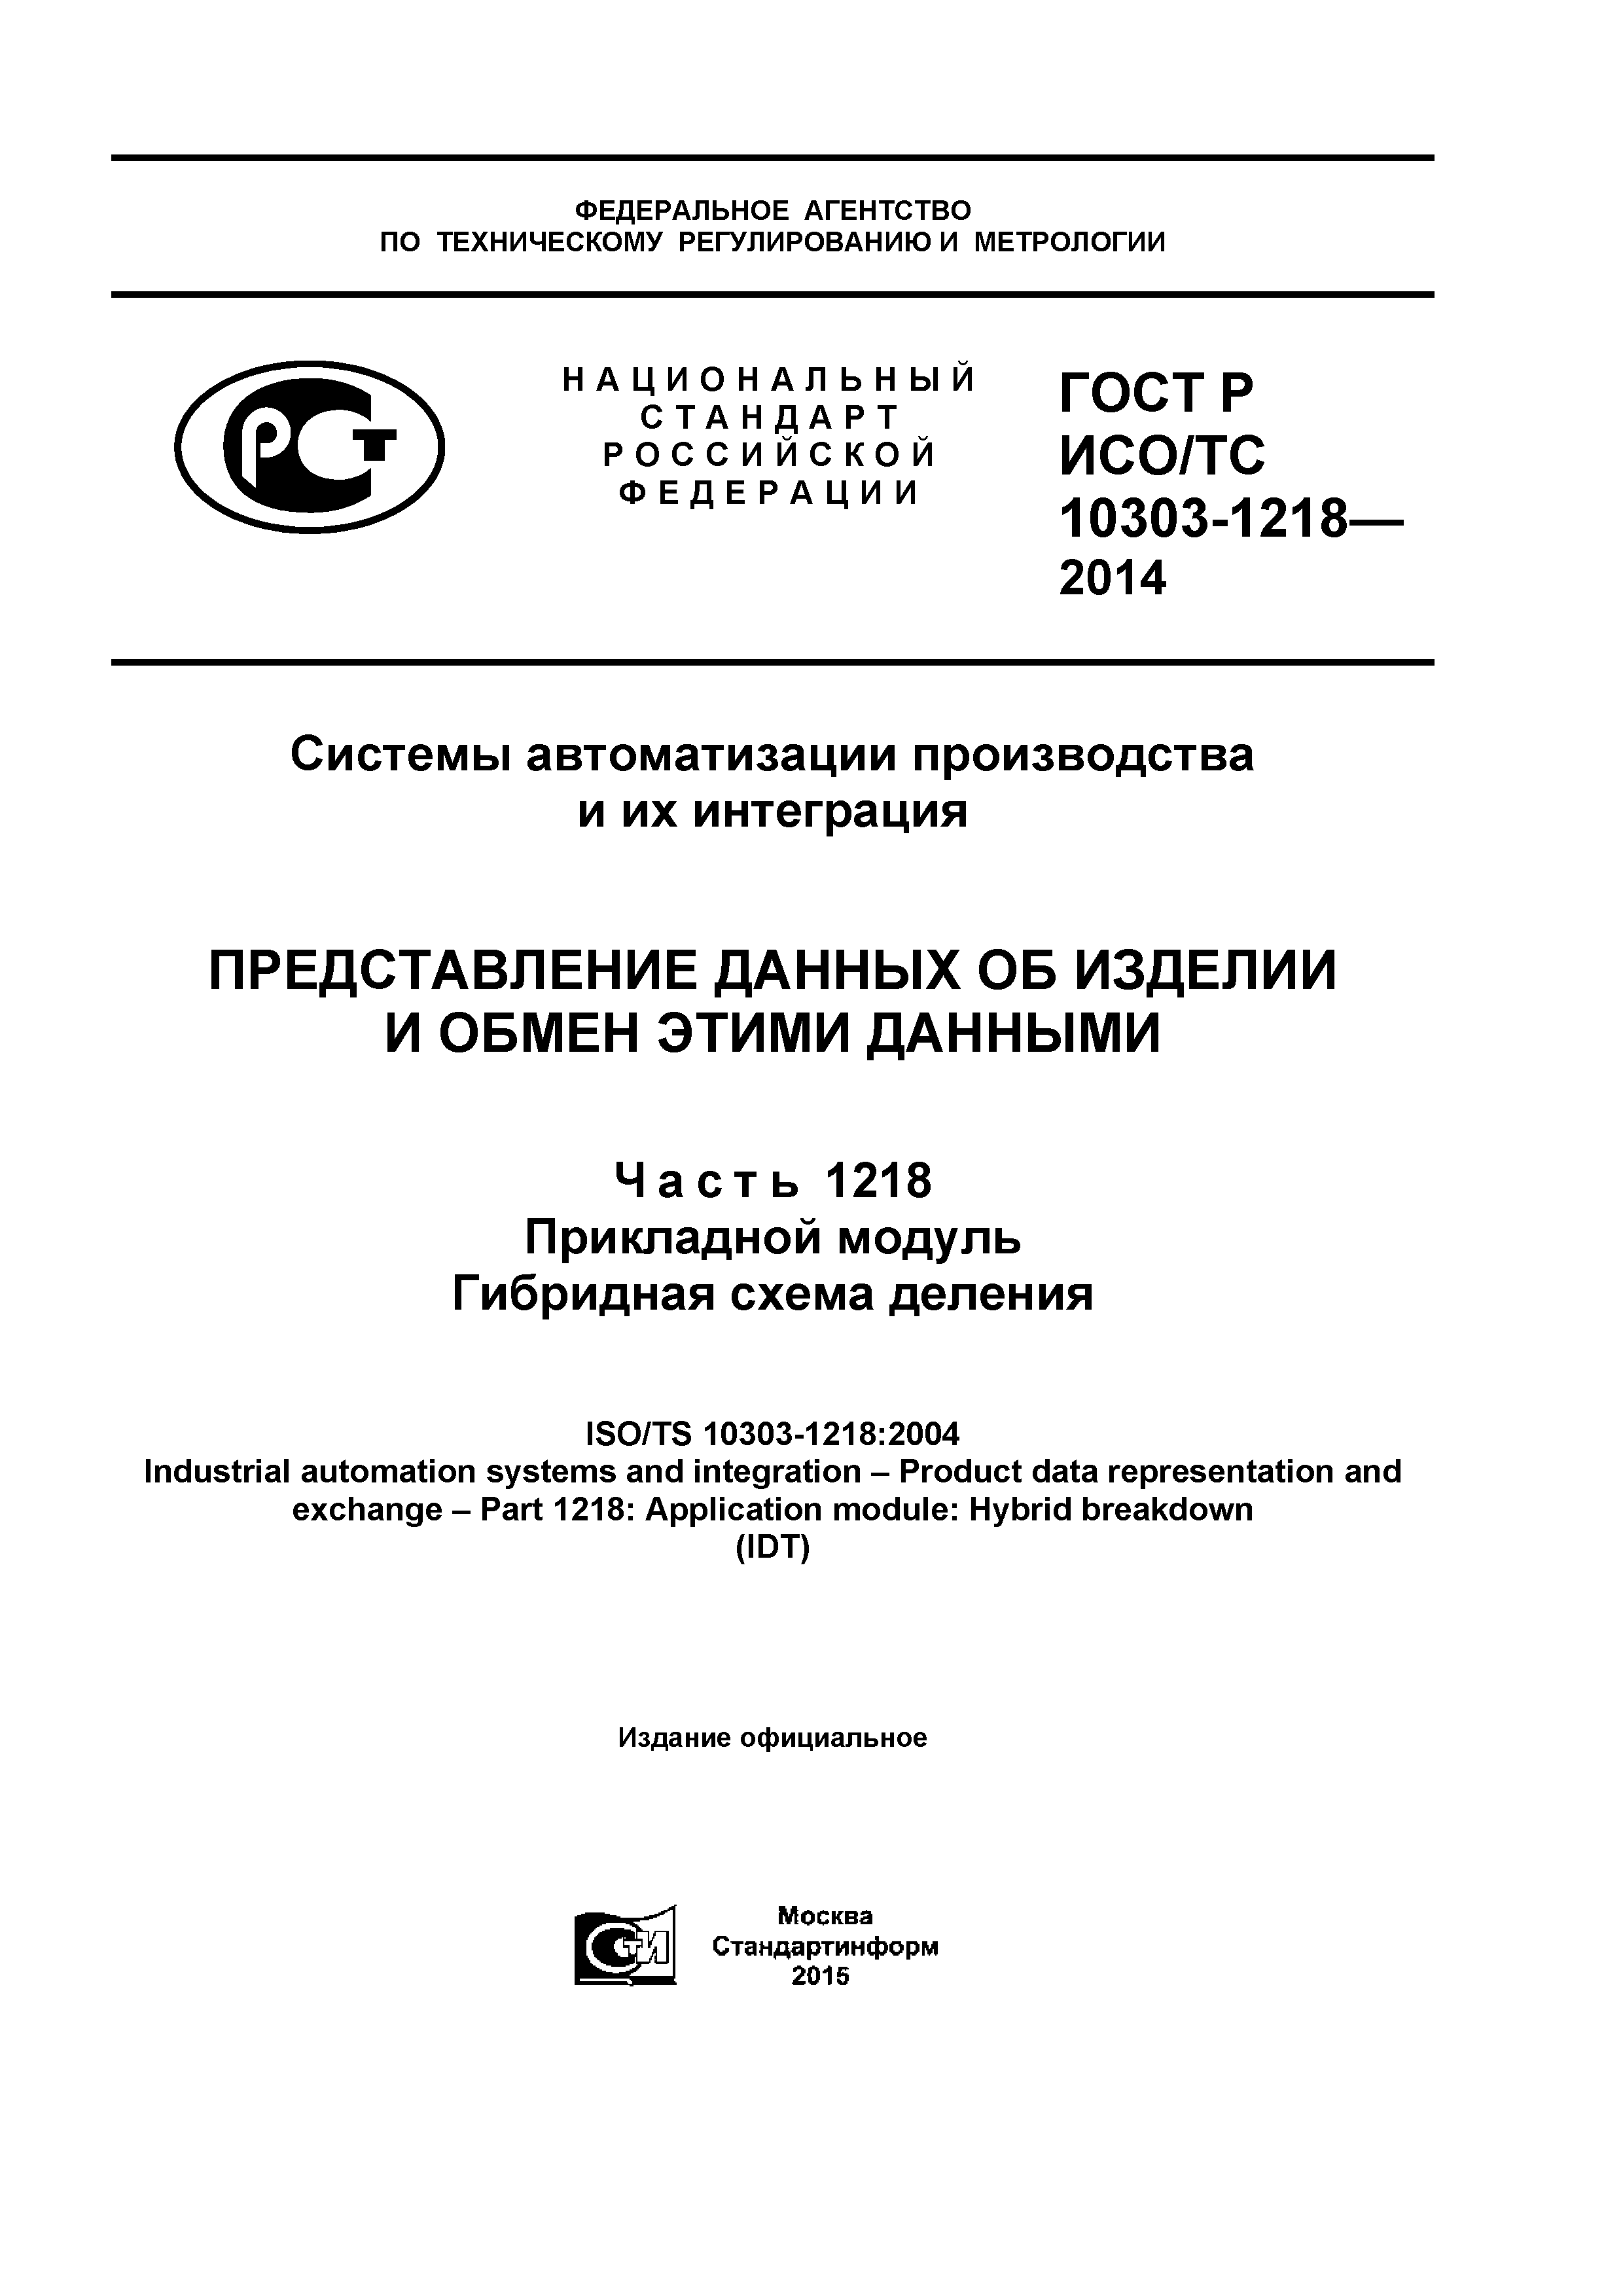 ГОСТ Р ИСО/ТС 10303-1218-2014